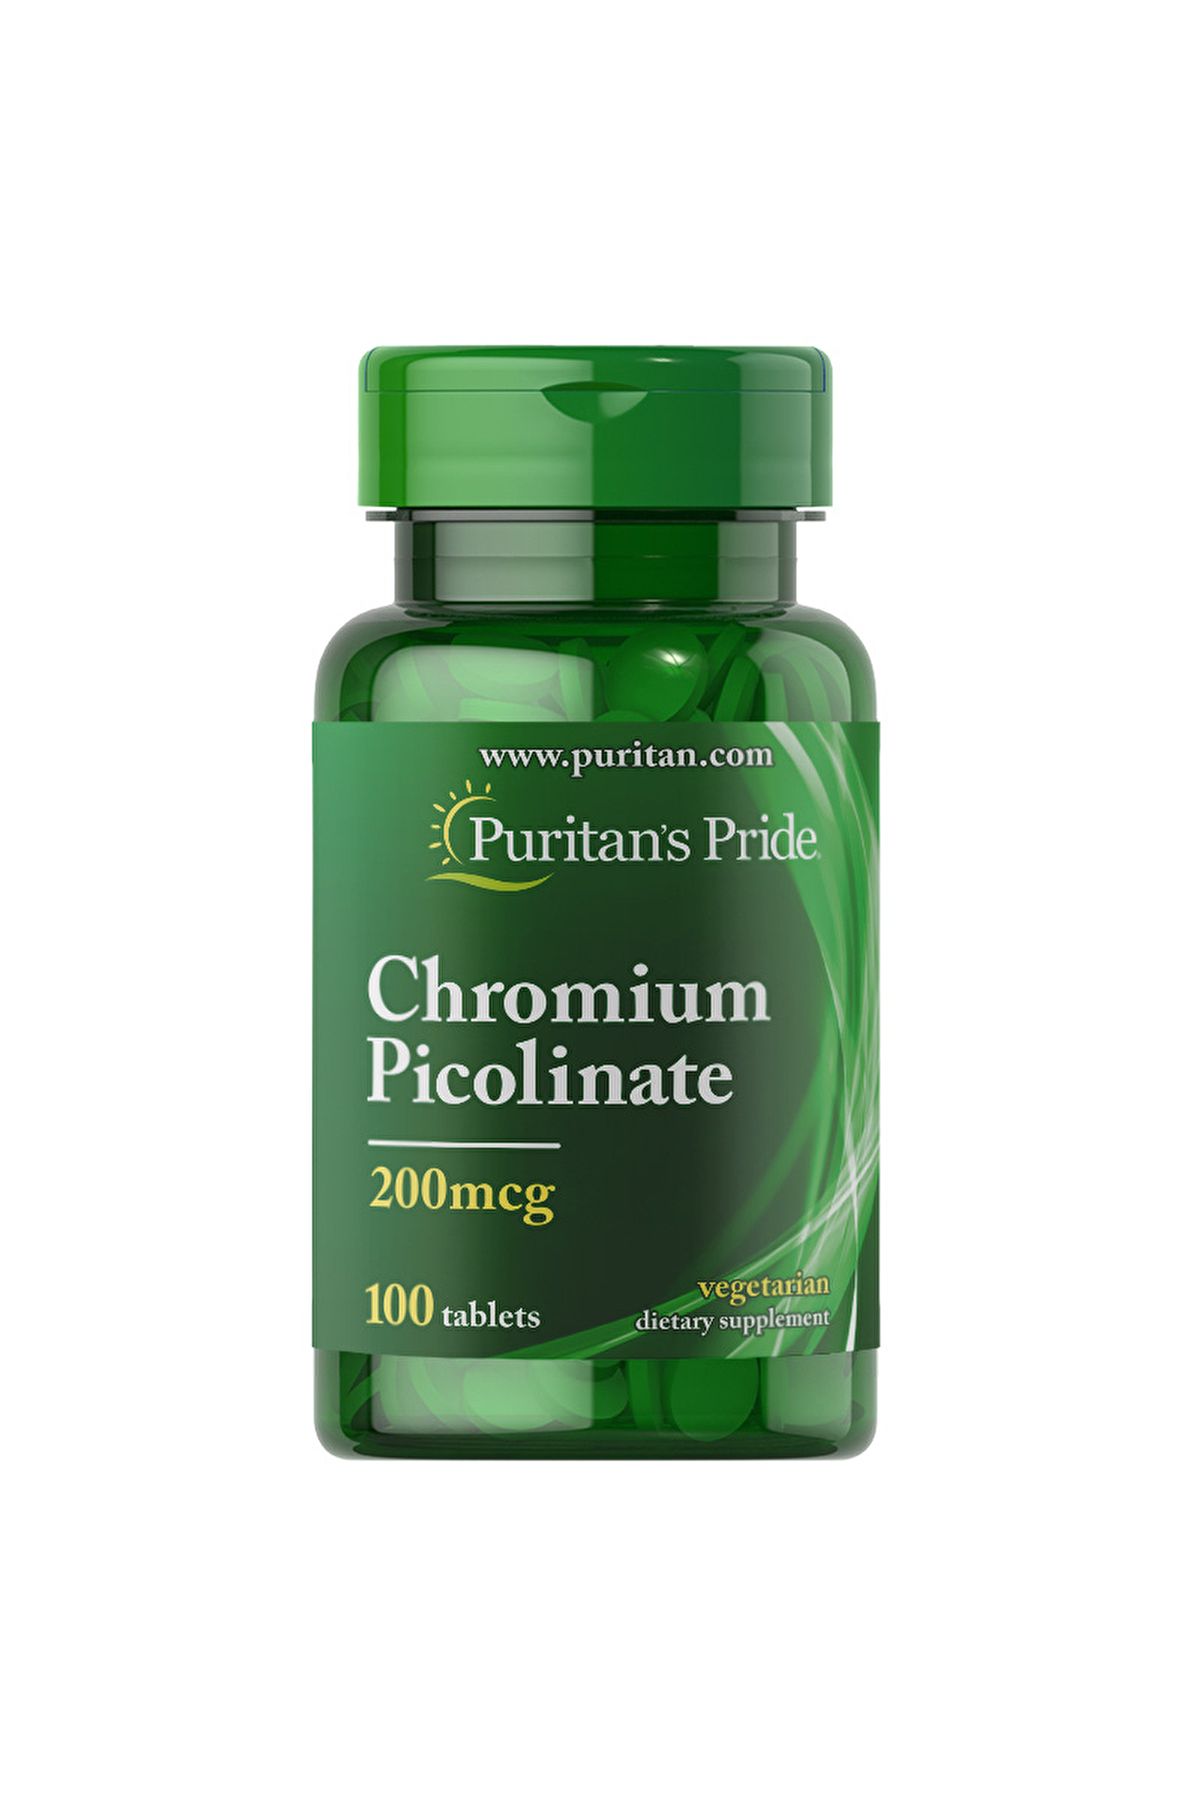 Puritan’s Pride Chromium Picolinate 200 Mcg 100 Tablet